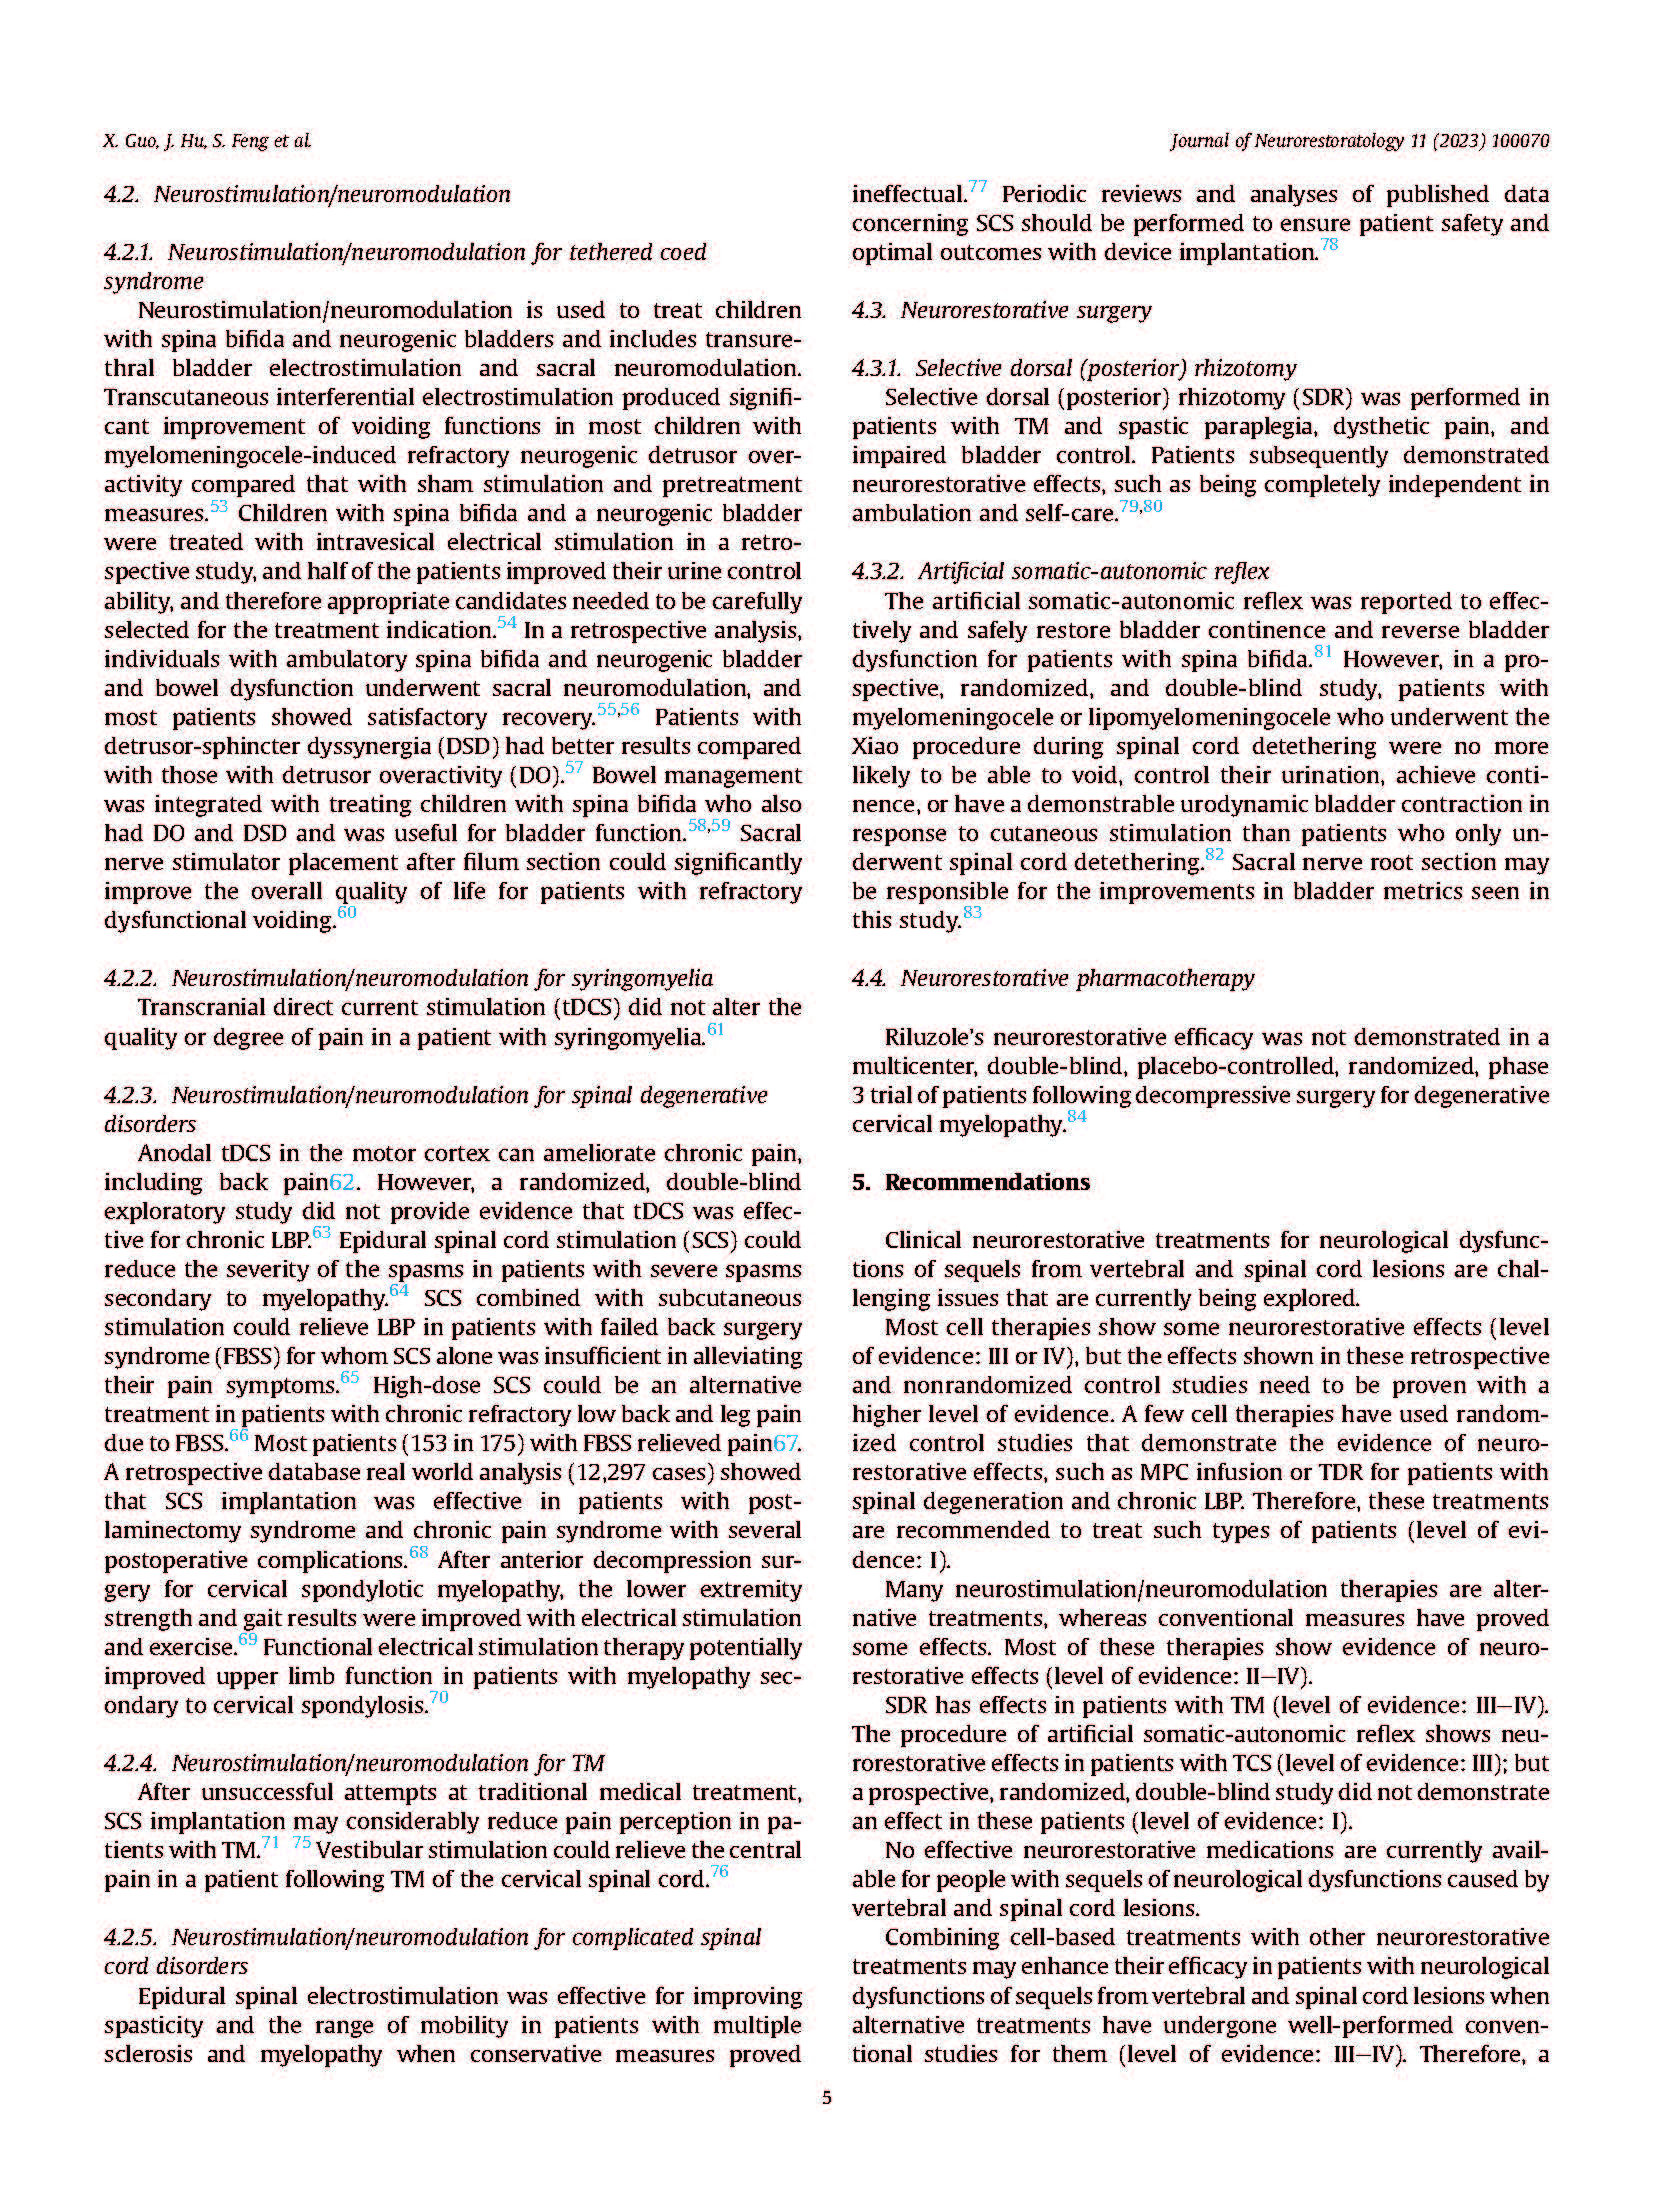 4-代表性学术论文Clinical neurorestorative treatment guidelines for neurological_页面_5.jpg